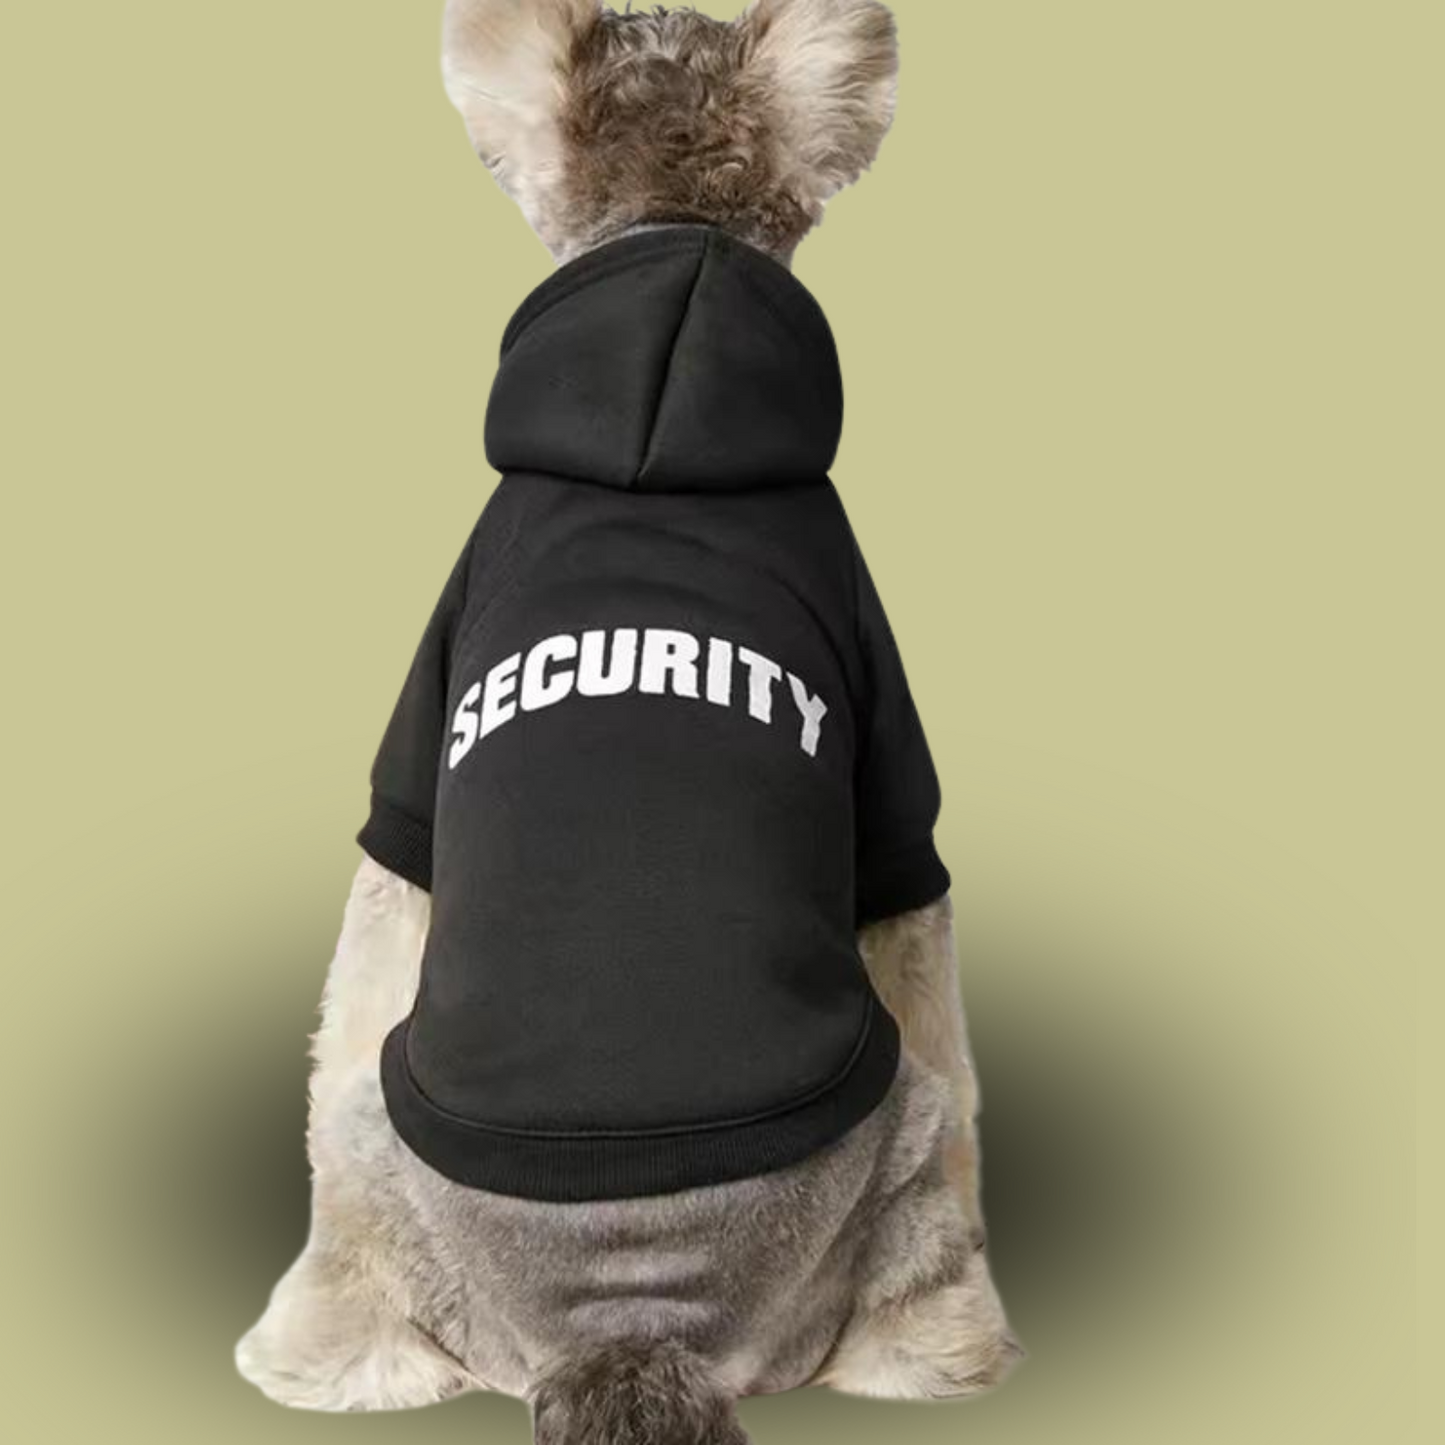 Dog Security Hoodie